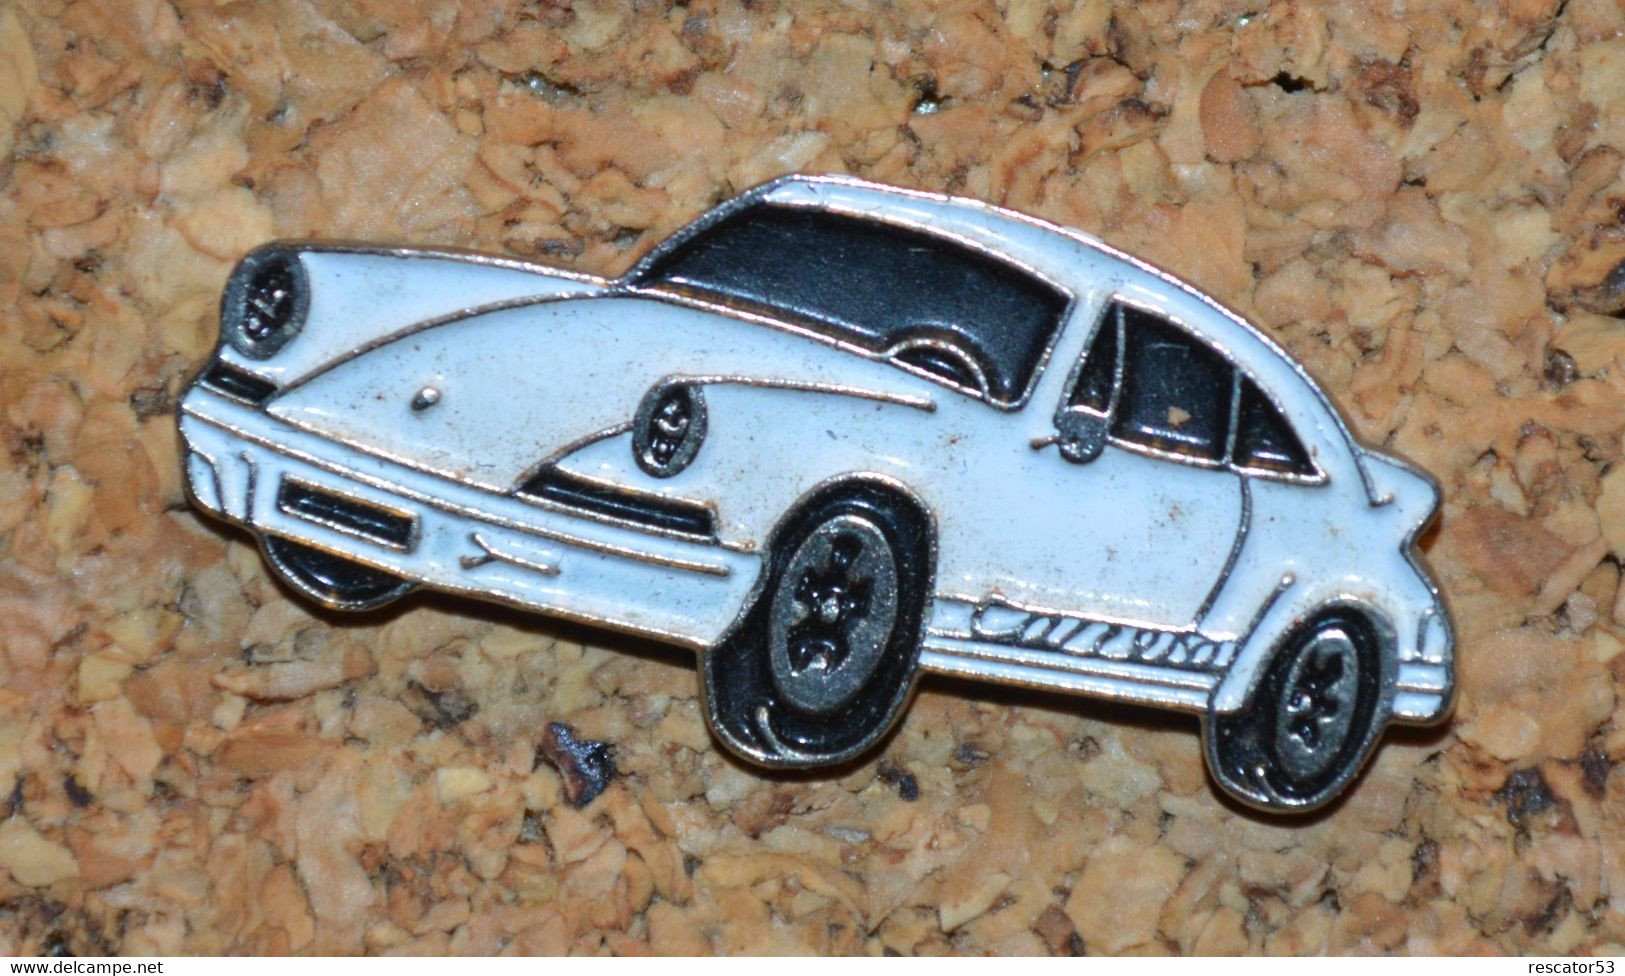 Rare Pin's Porsche Carrera - Porsche